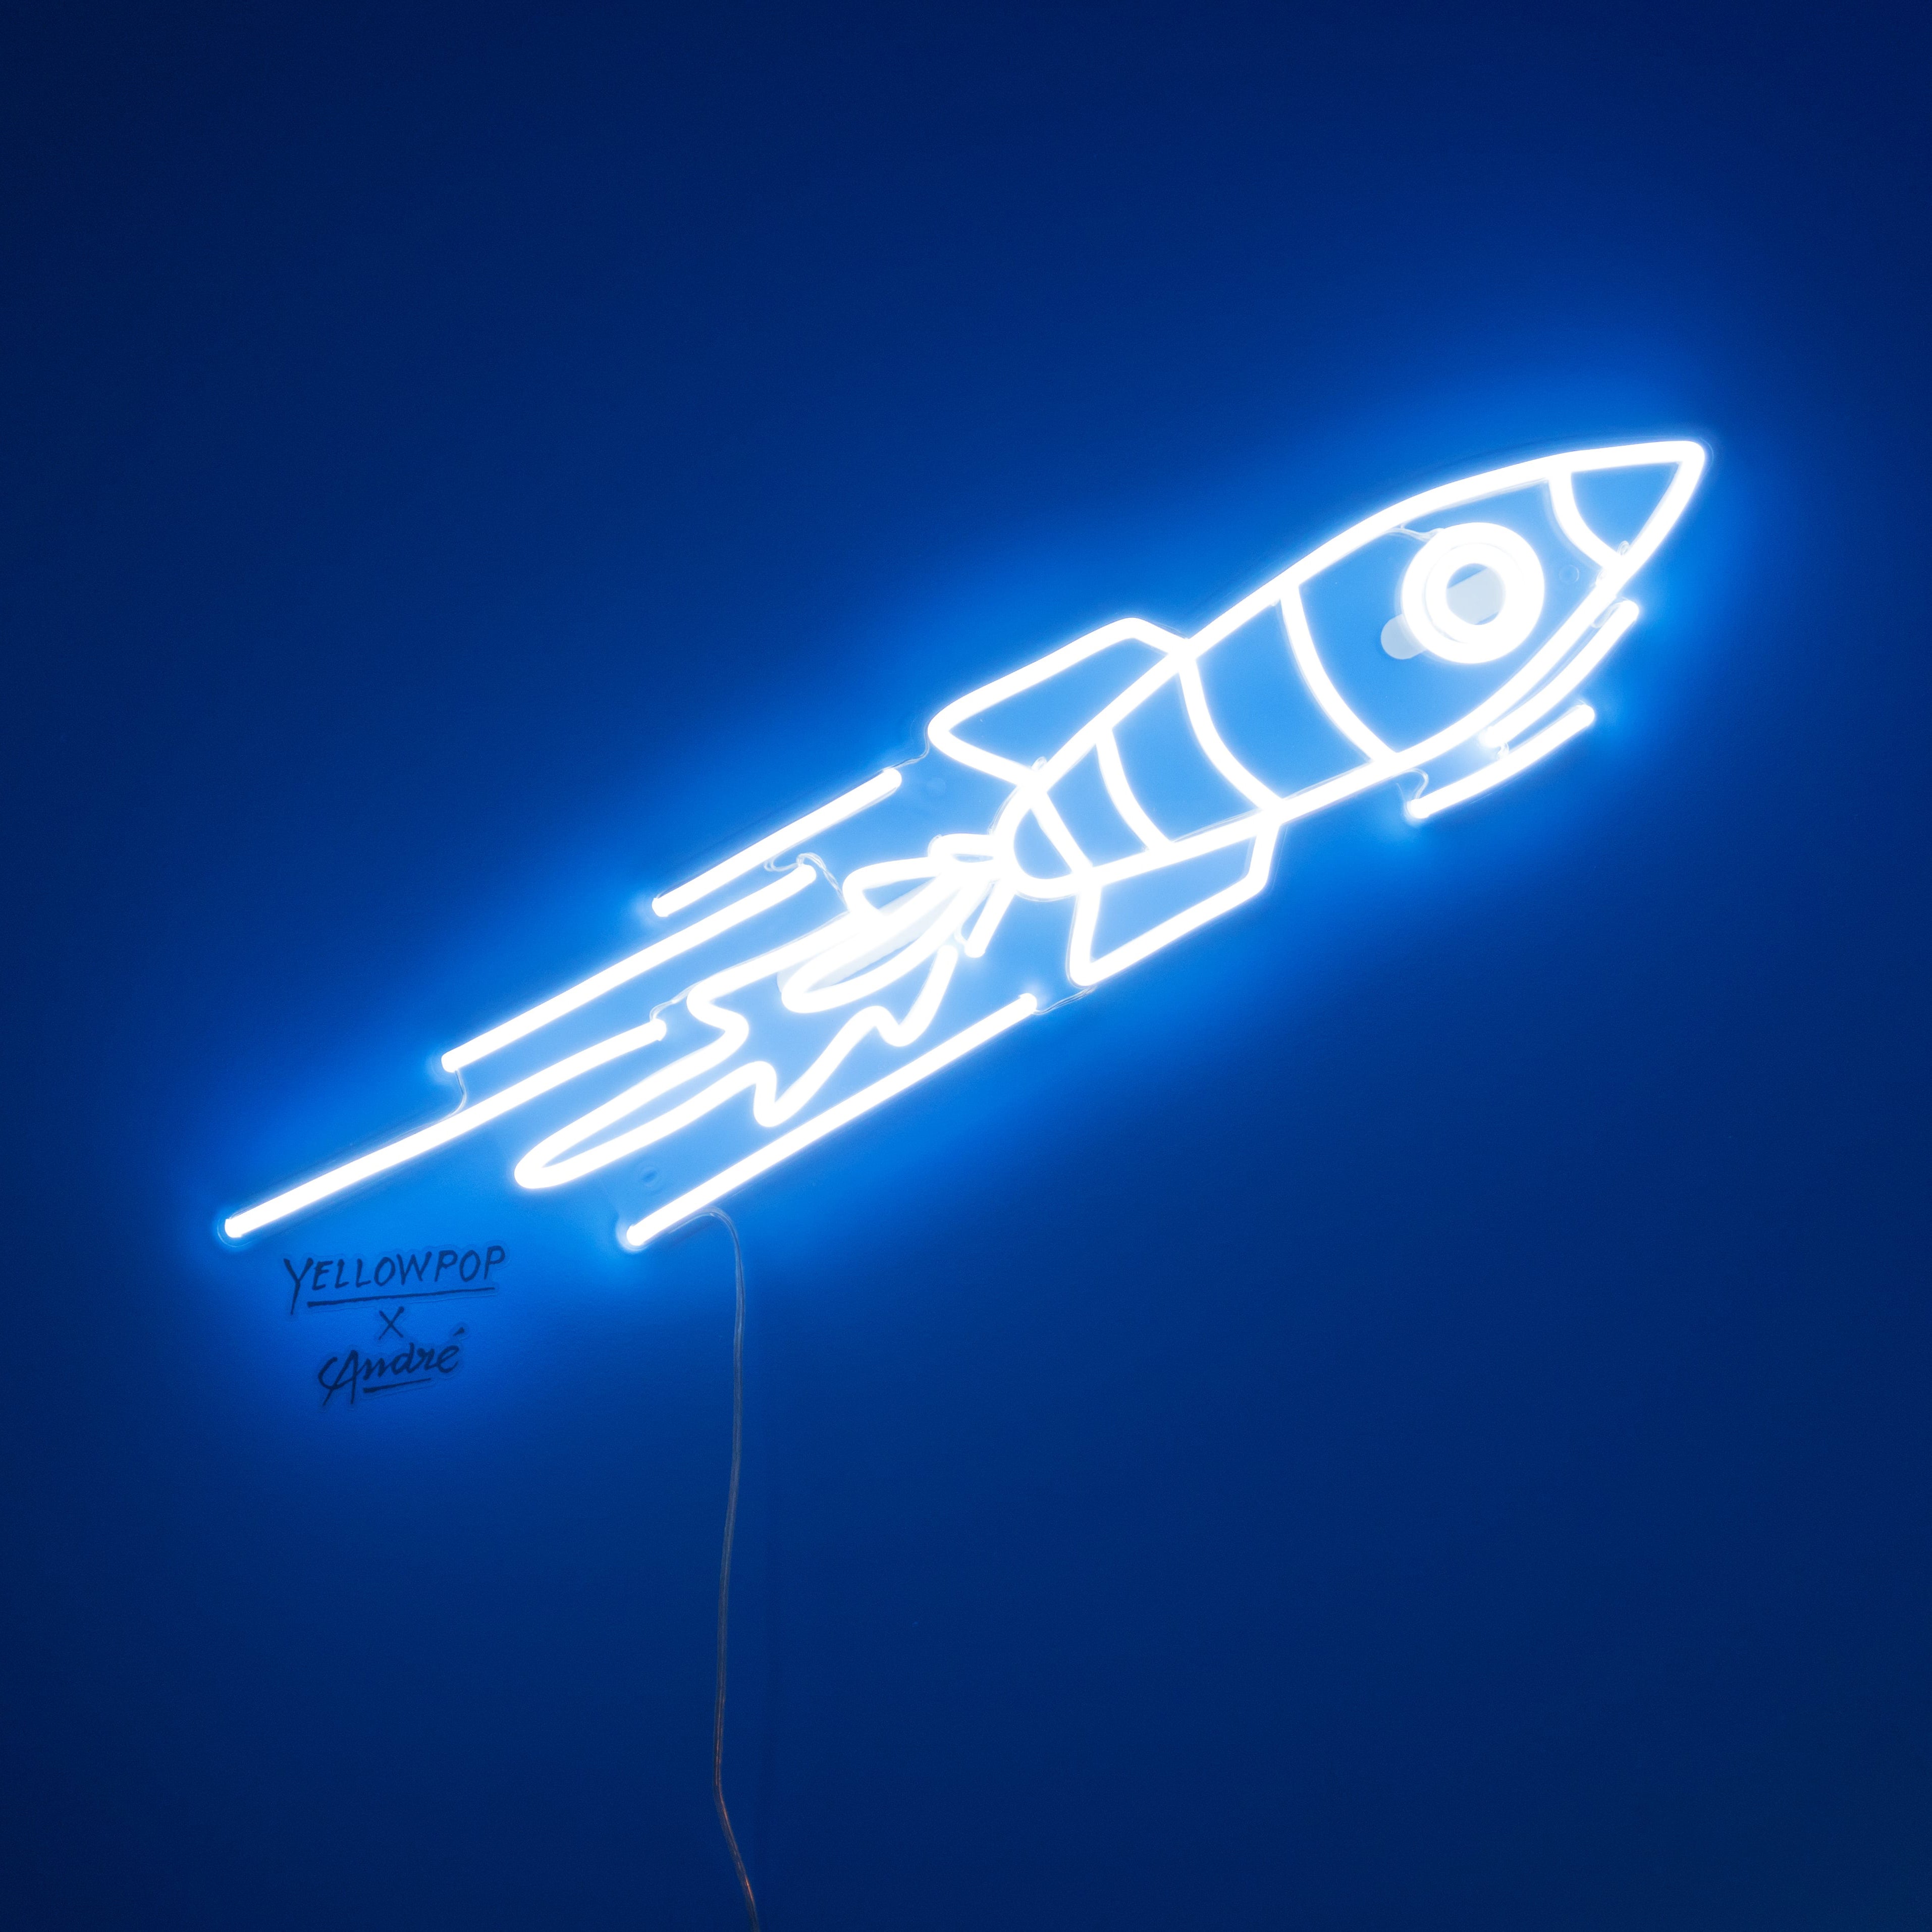 Rocket - Neon Tabela by André Saraiva - Neonbir